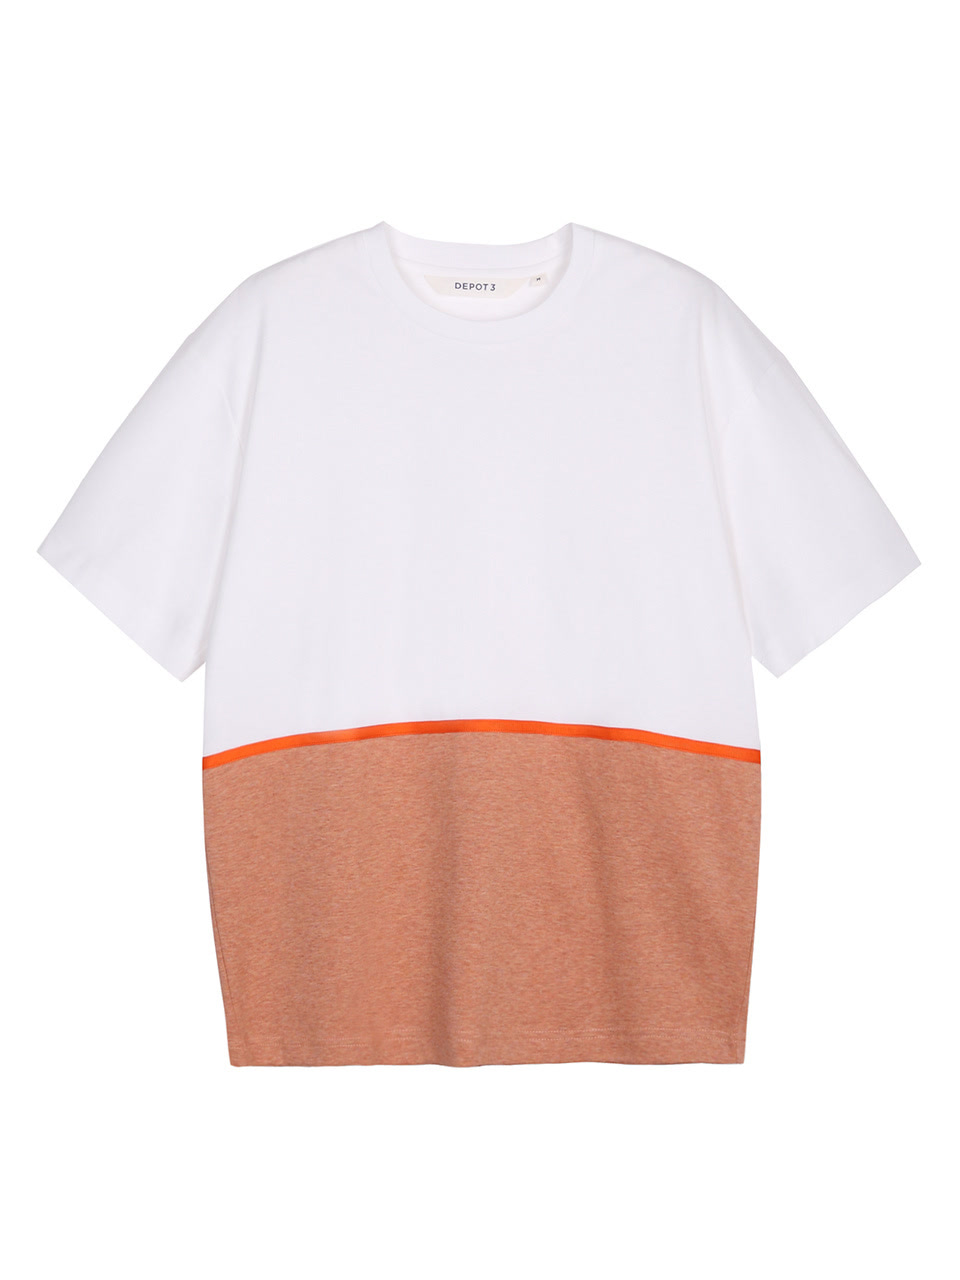 《超能幼稚园》合作品牌DEPOT3短袖拼接织带T恤